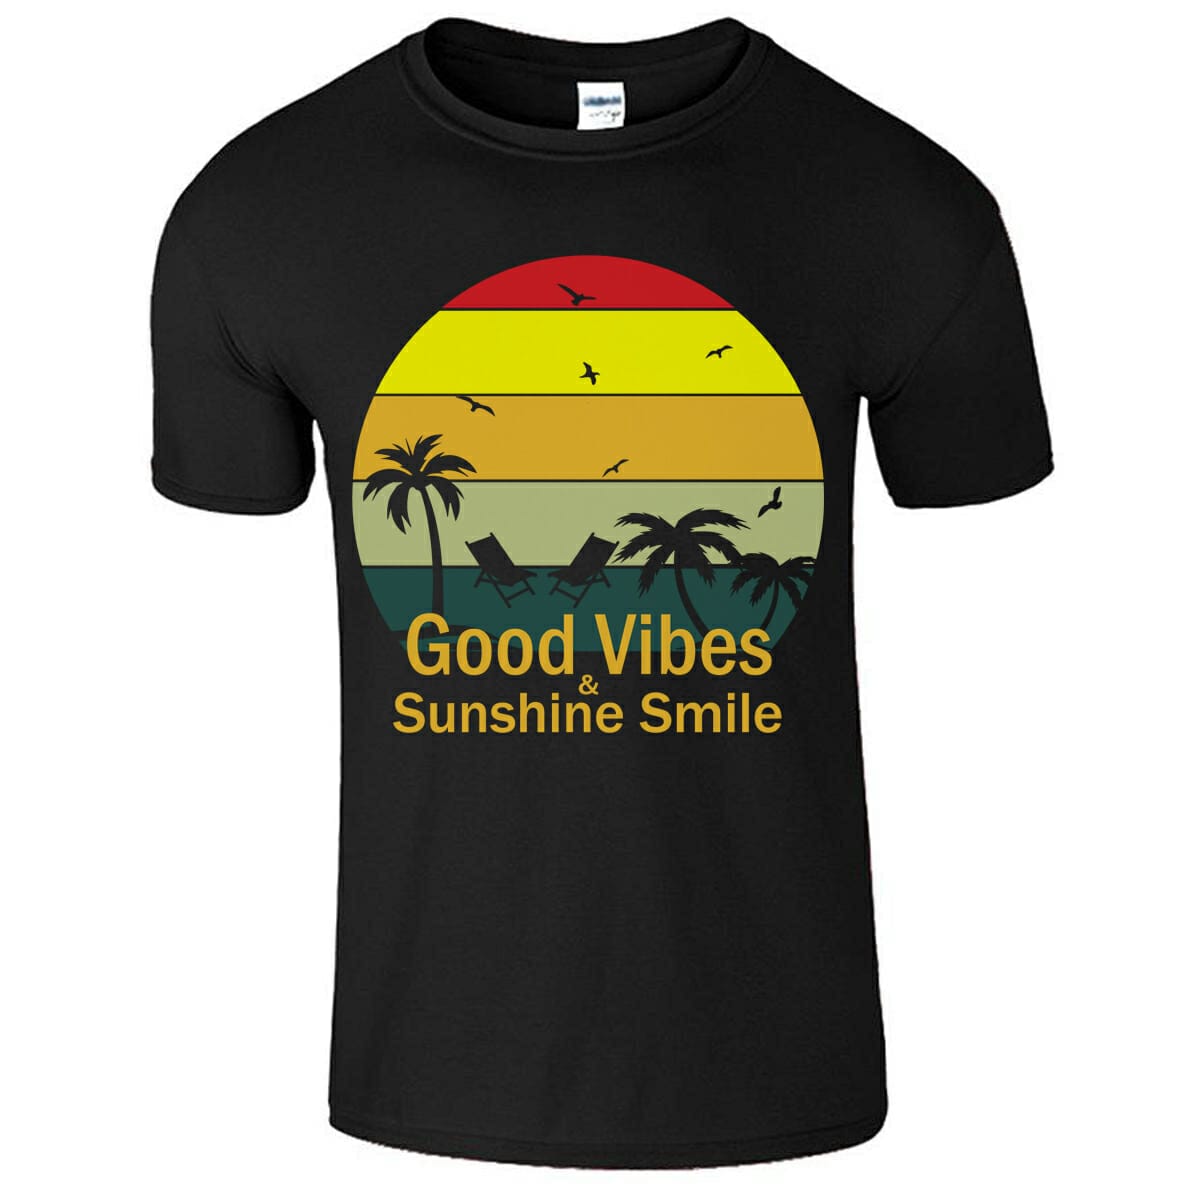 Good Vibes & Sunshine Smile Retro T-Shirt Design For Summer